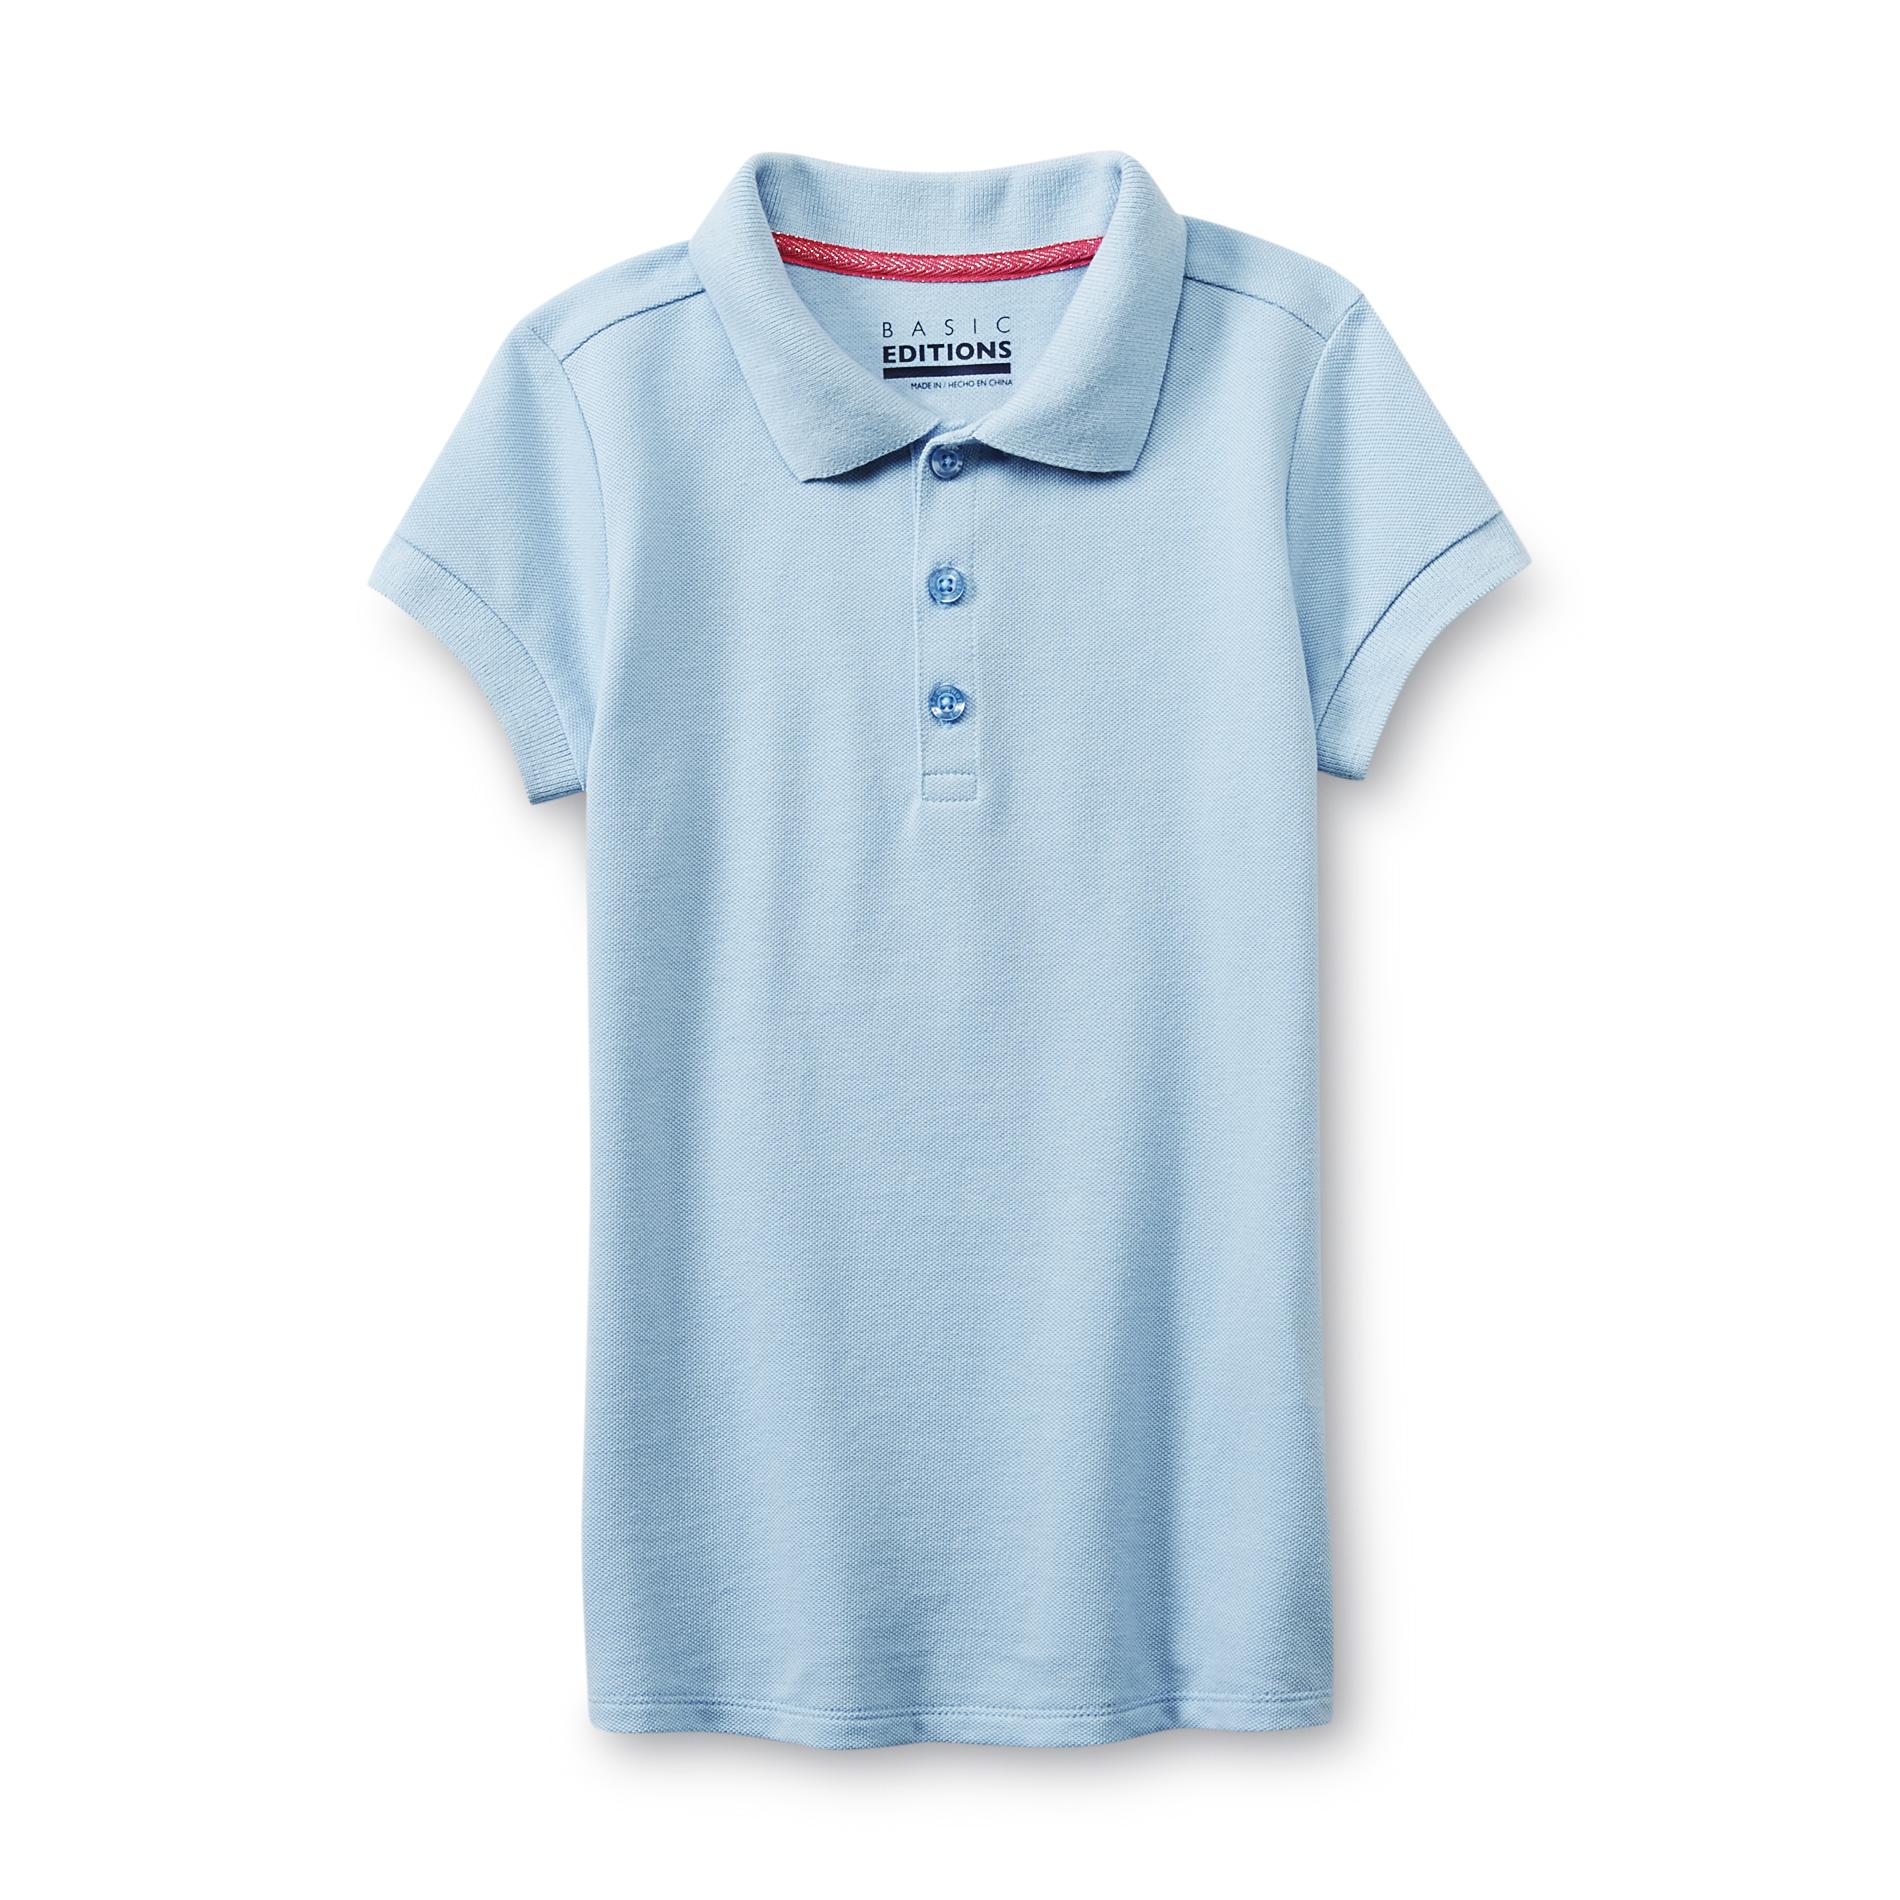 Basic Editions Girl's Polo Shirt